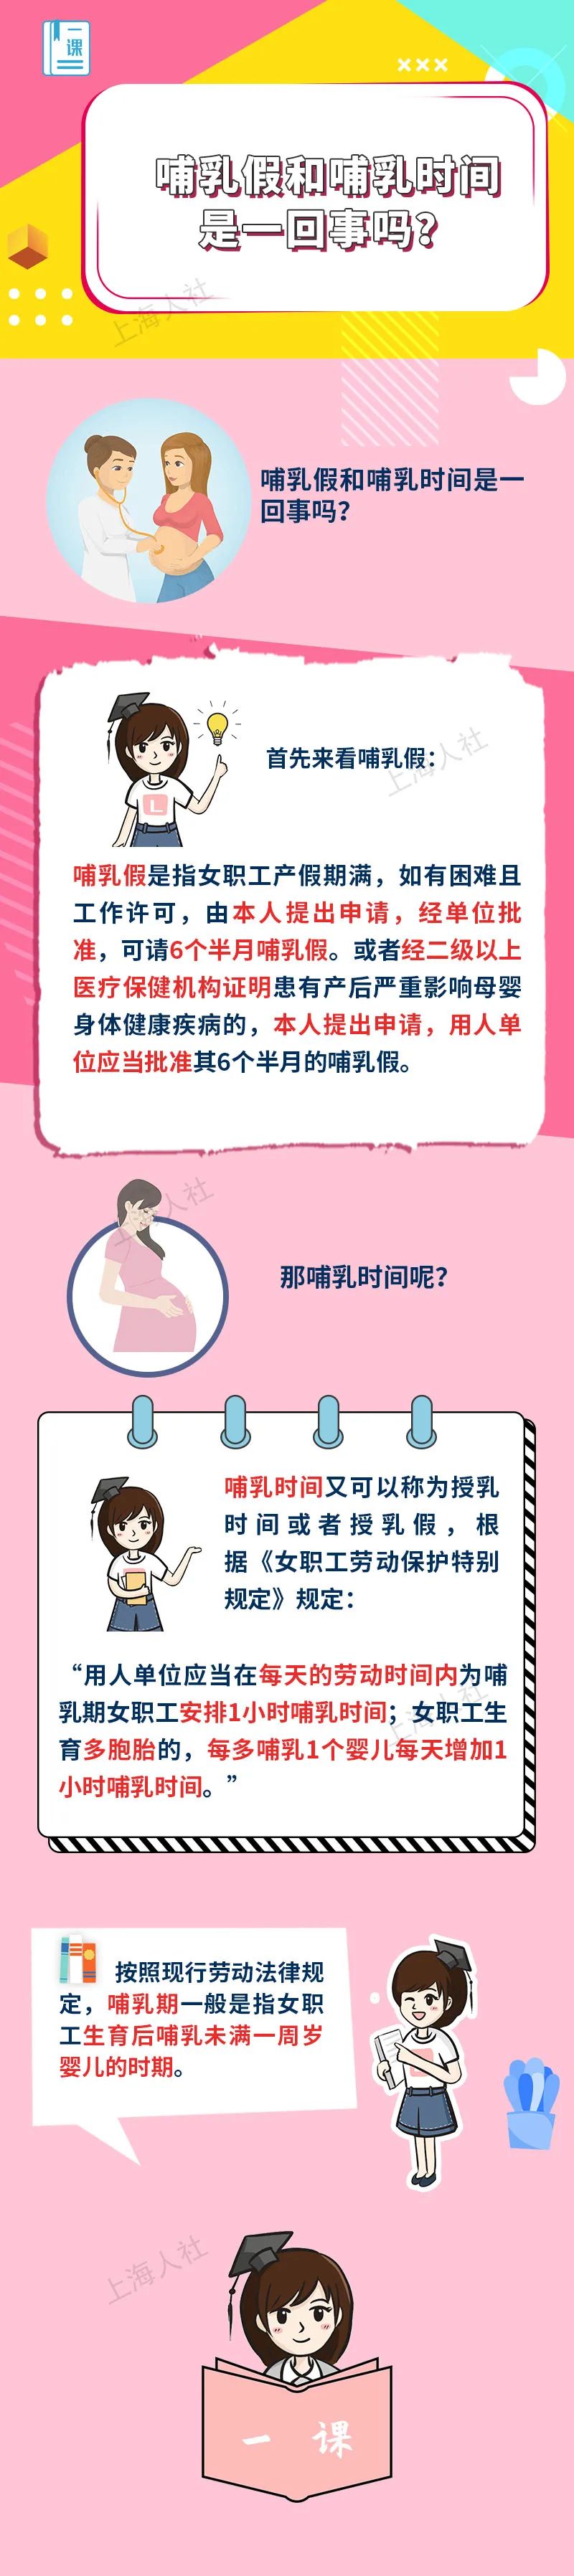 来源:上海人力资源和社会保障原标题:《哺乳假和哺乳时间是一回事吗?